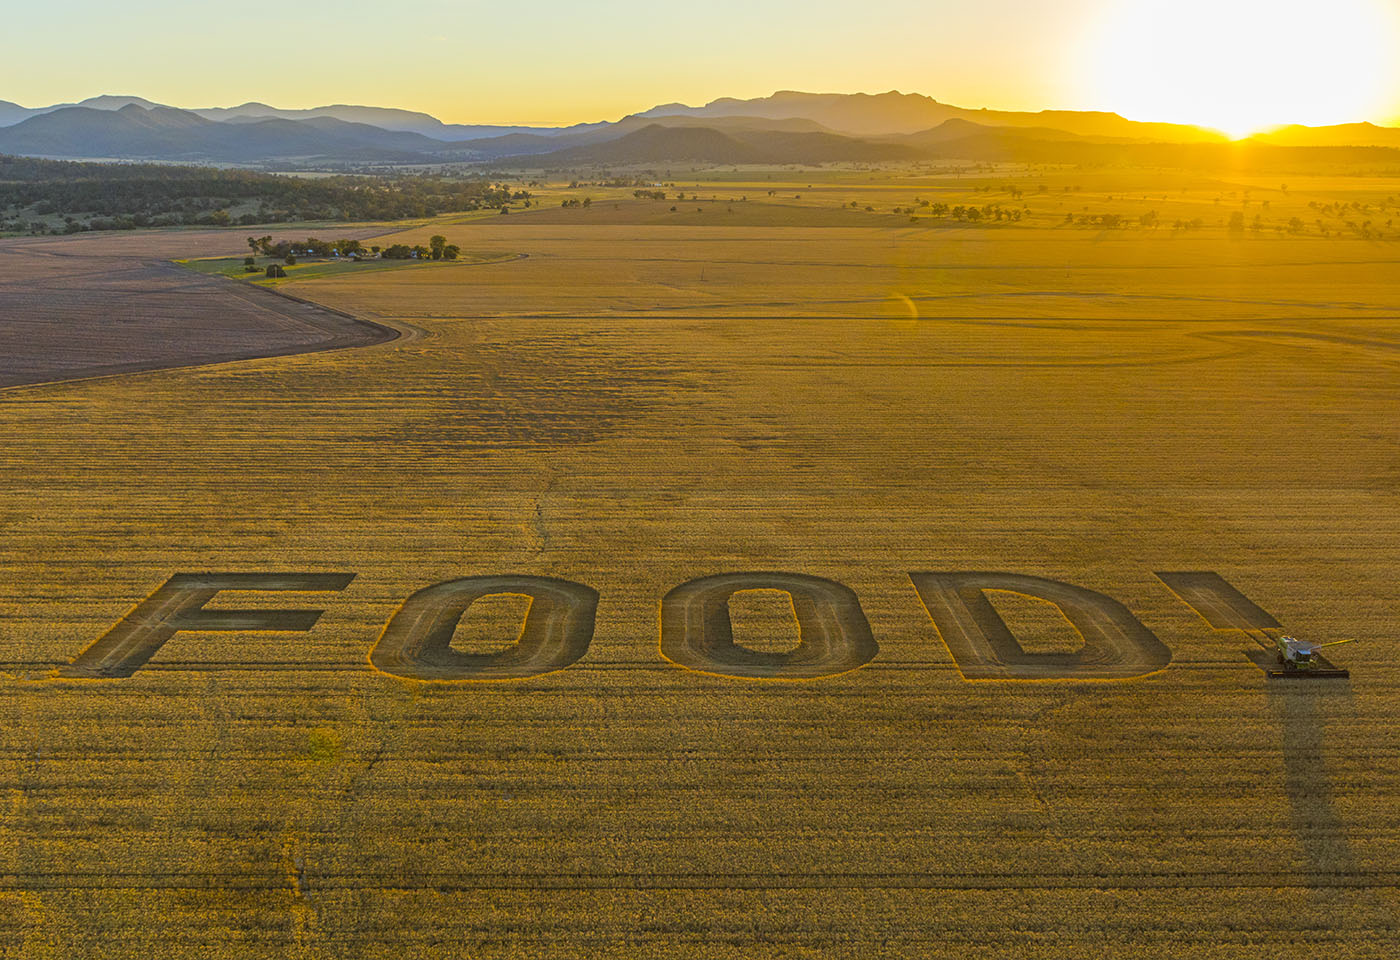 Landscape image of FOOD! written in a crop